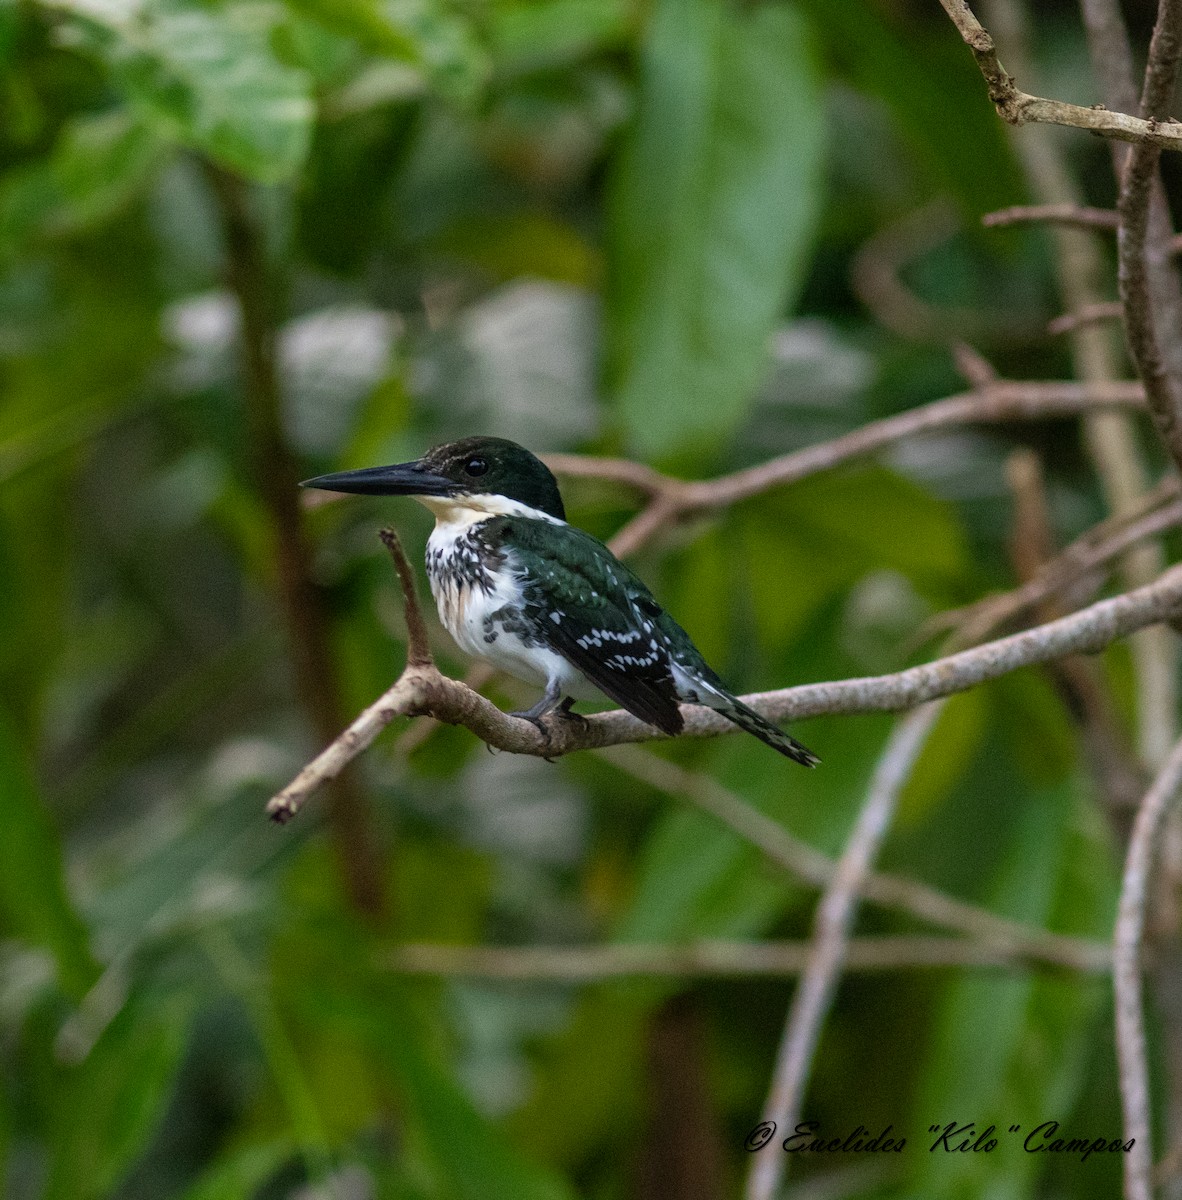 Green Kingfisher - Euclides "Kilo" Campos